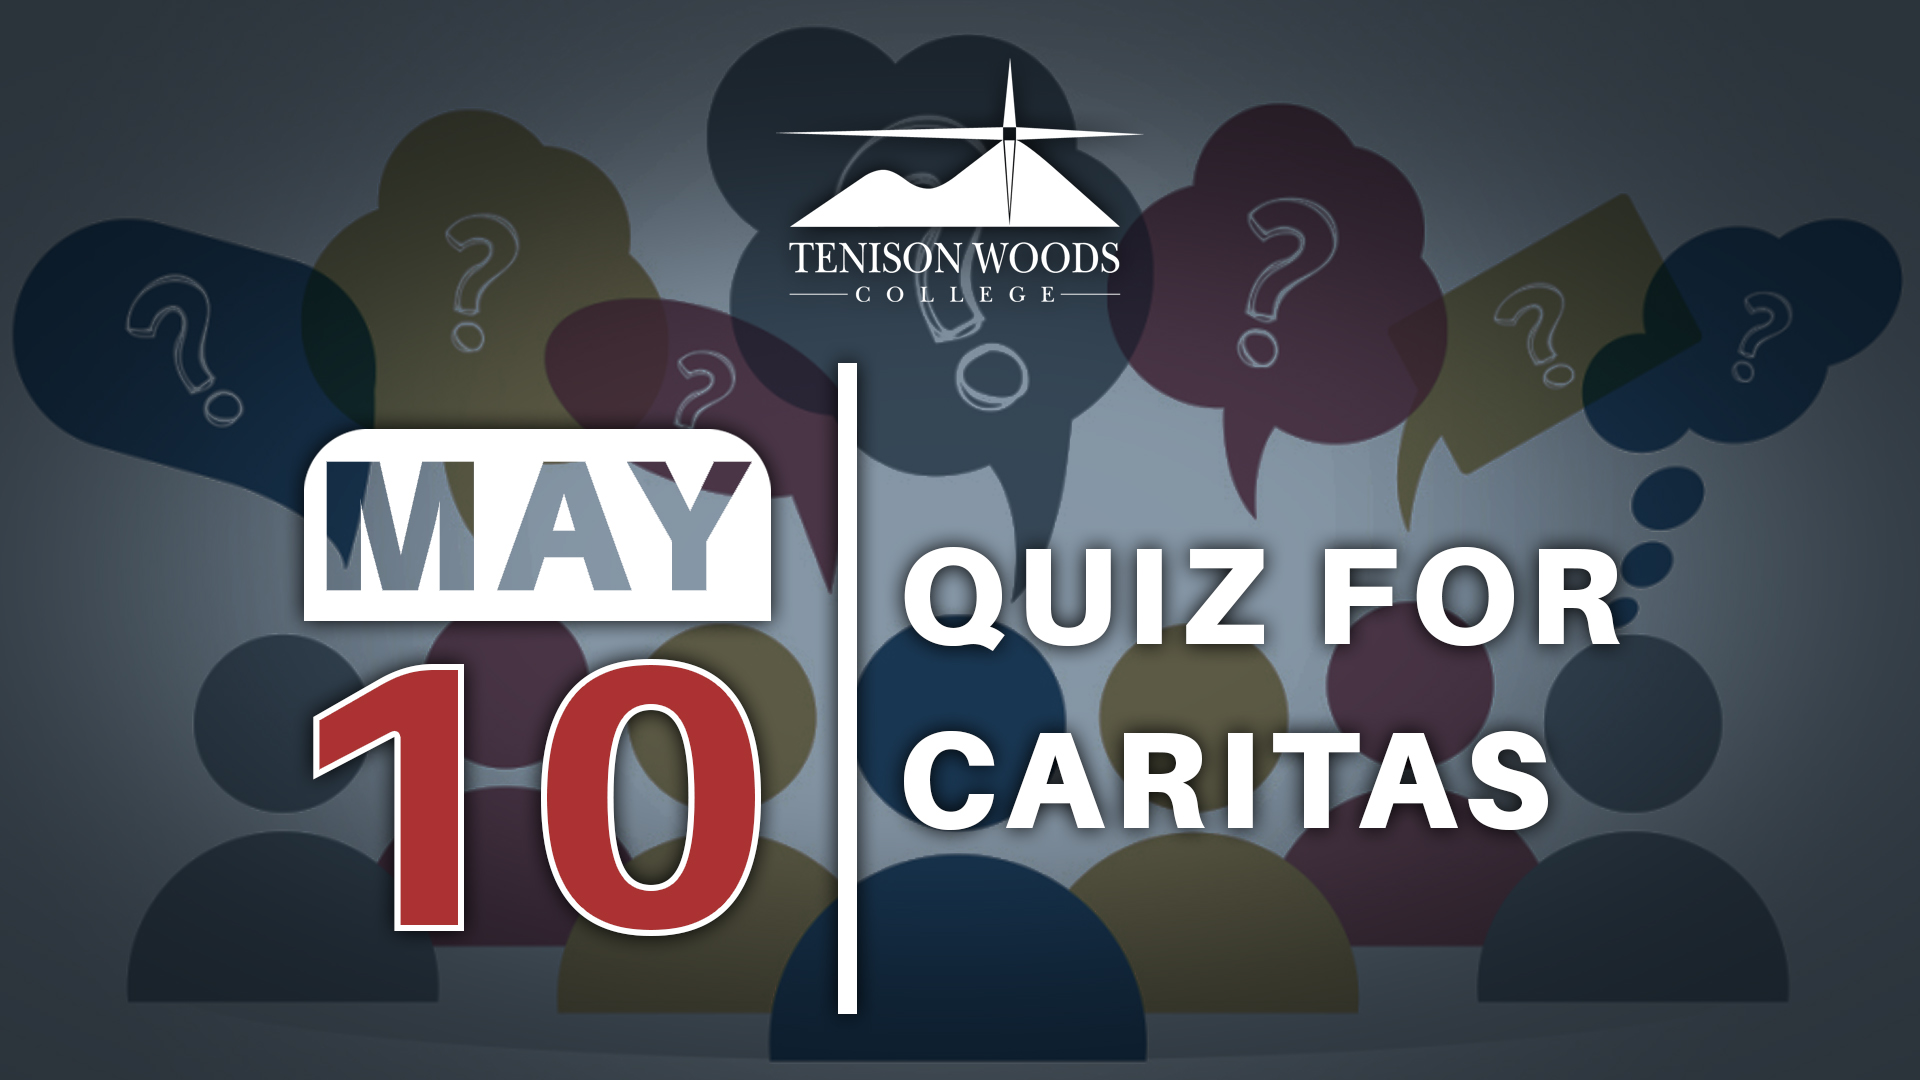 May 10 Quiz For Caritas.jpg